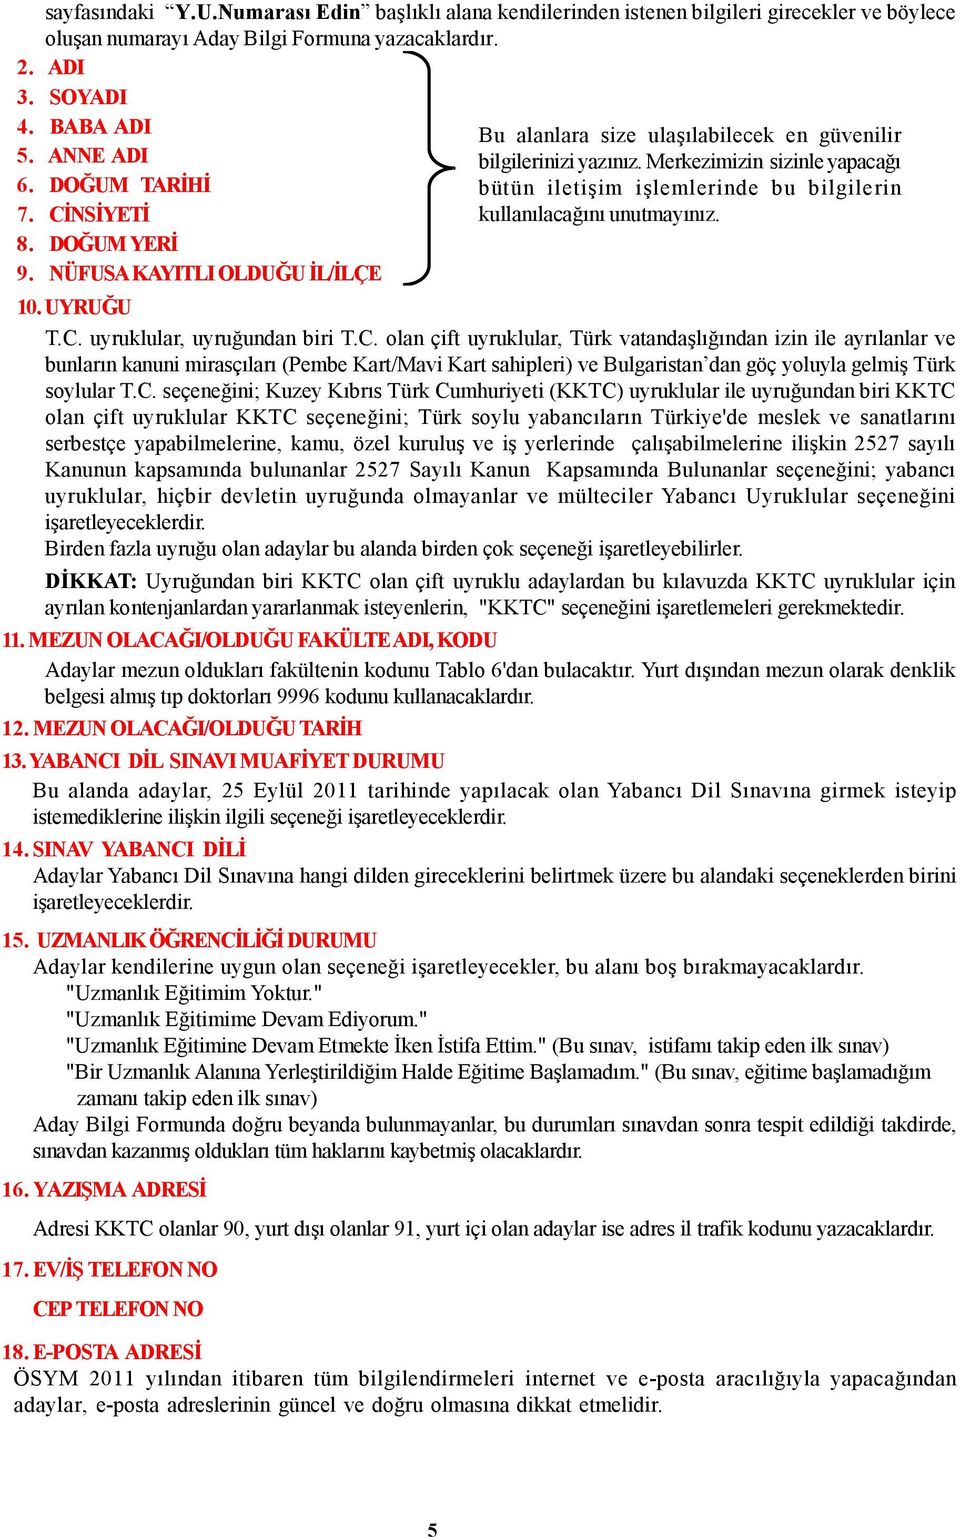 C. seçeneğini; Kuzey Kıbrıs Türk Cumhuriyeti (KKTC) uyruklular ile uyruğundan biri KKTC olan çift uyruklular KKTC seçeneğini; Türk soylu yabancıların Türkiye'de meslek sanatlarını serbestçe